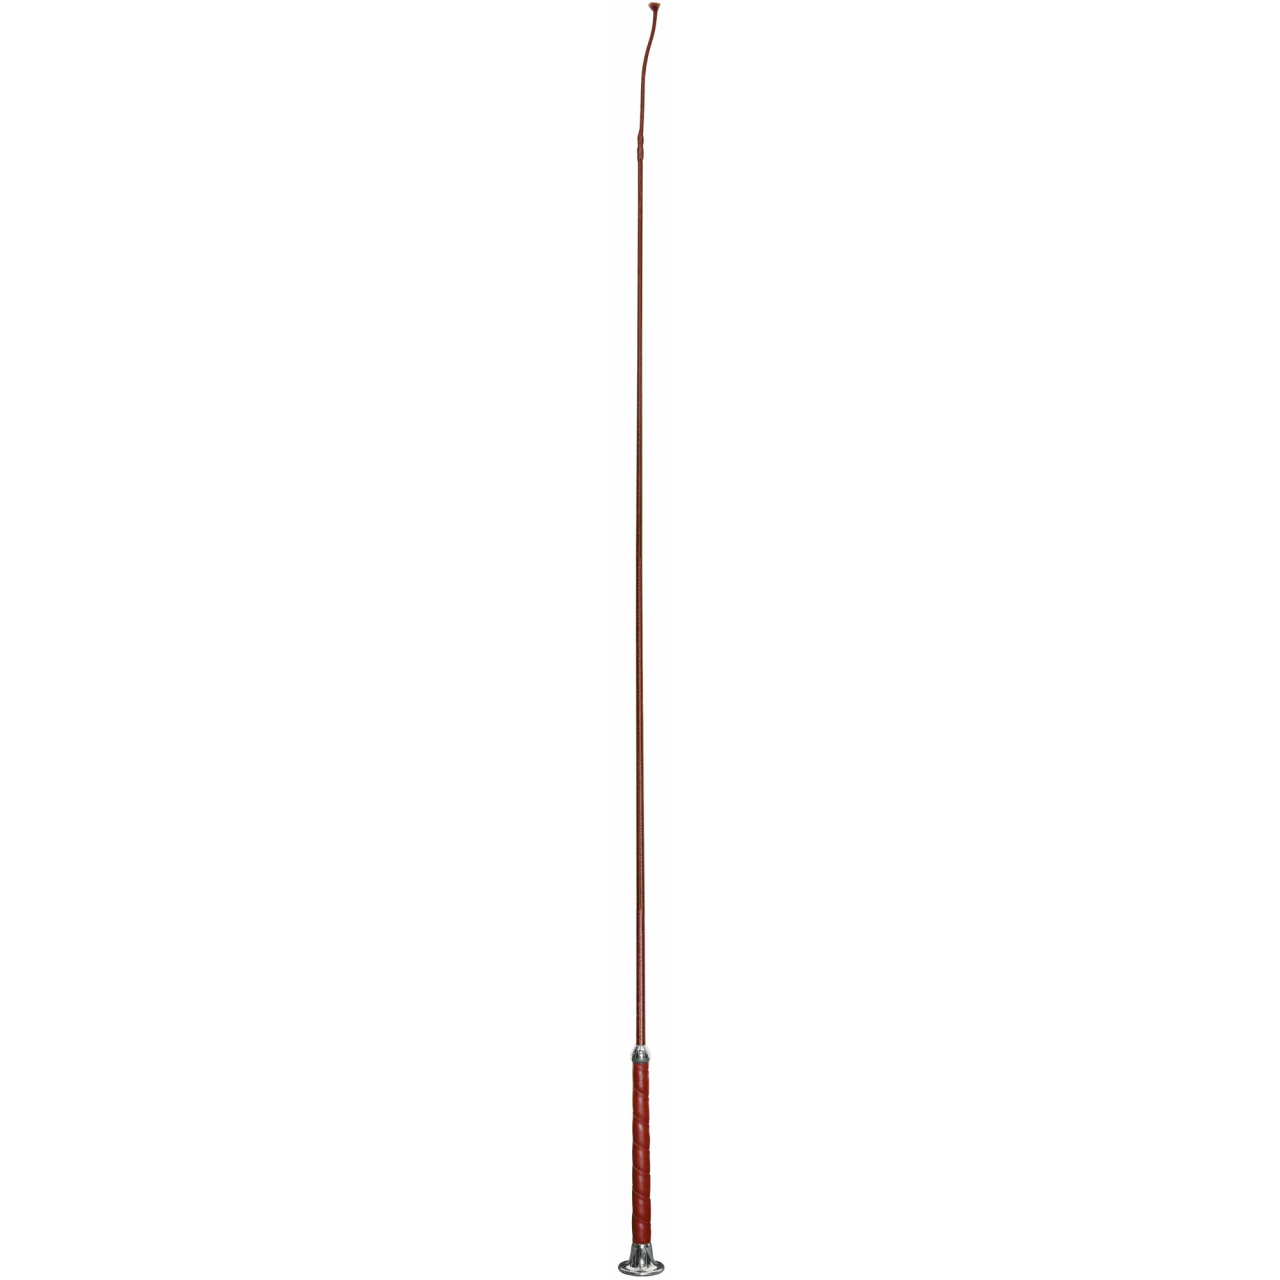 Covalliero díjlovas pálca műbőr borítással - bordó, 110 cm